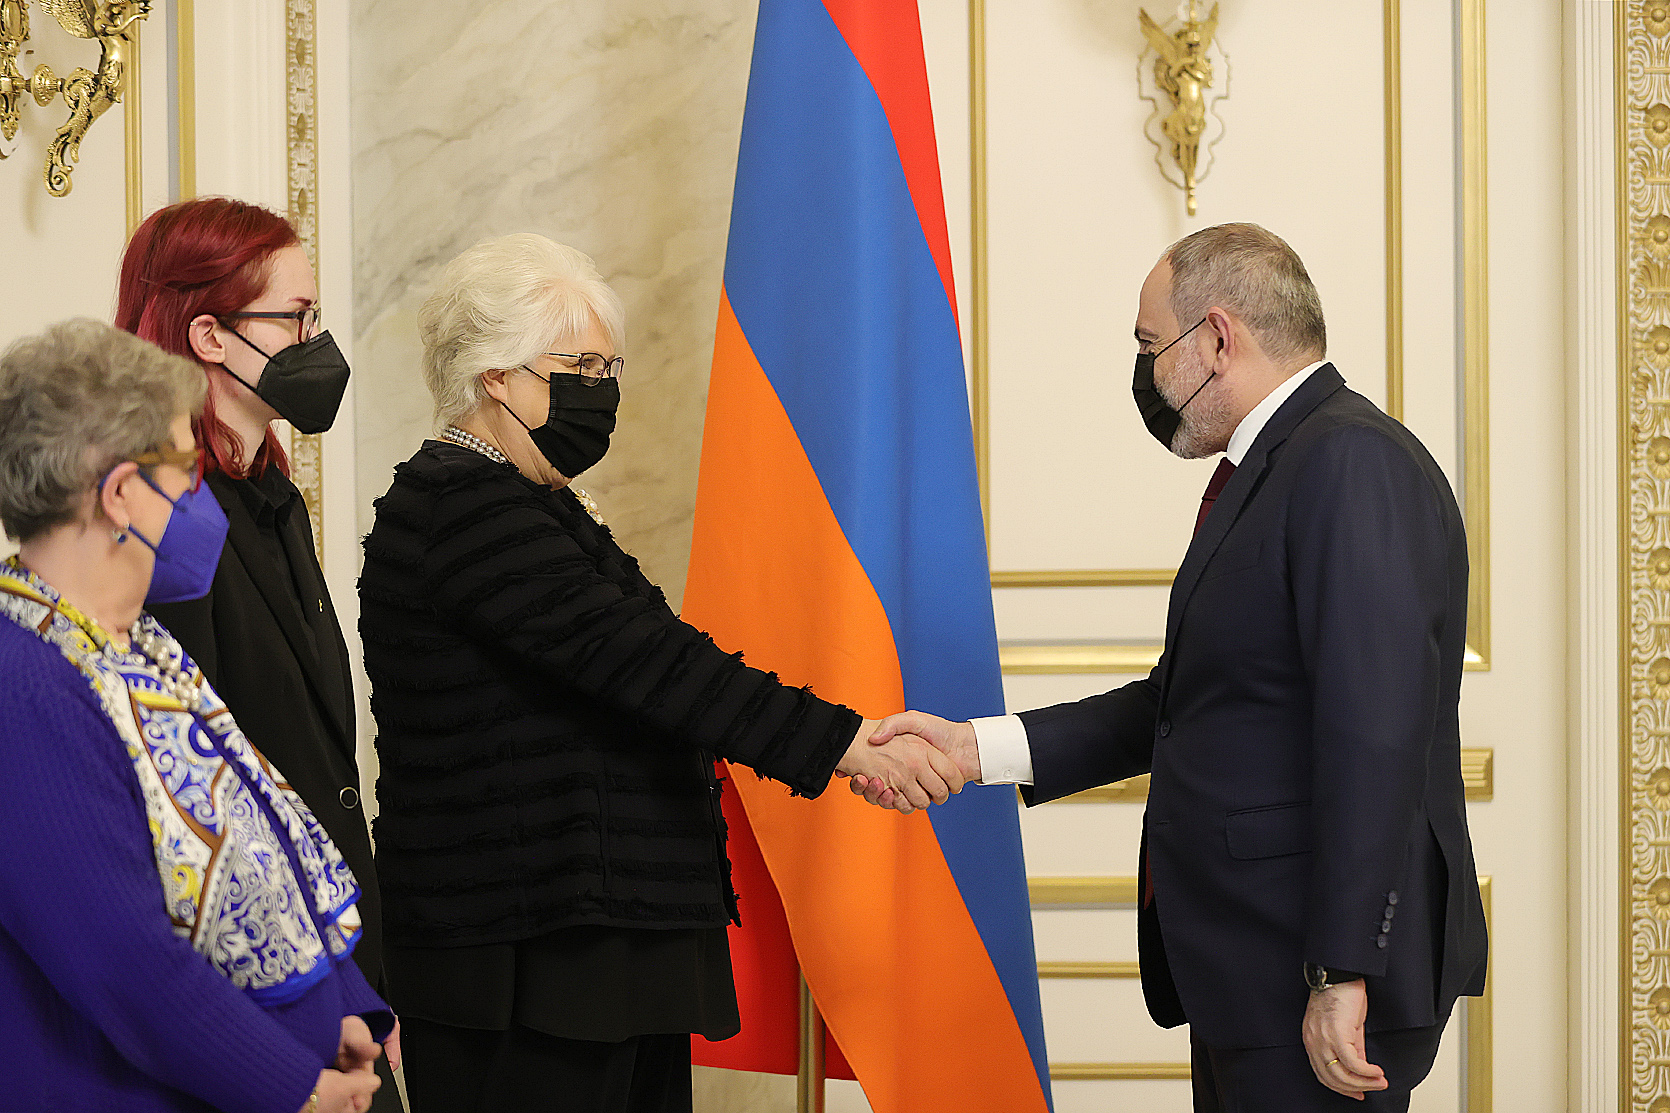 ՀՀ-ԵՄ խորհրդարանական գործընկերության կոմիտեն կարևոր հարթակ է Հայաստանի համար. վարչապետ